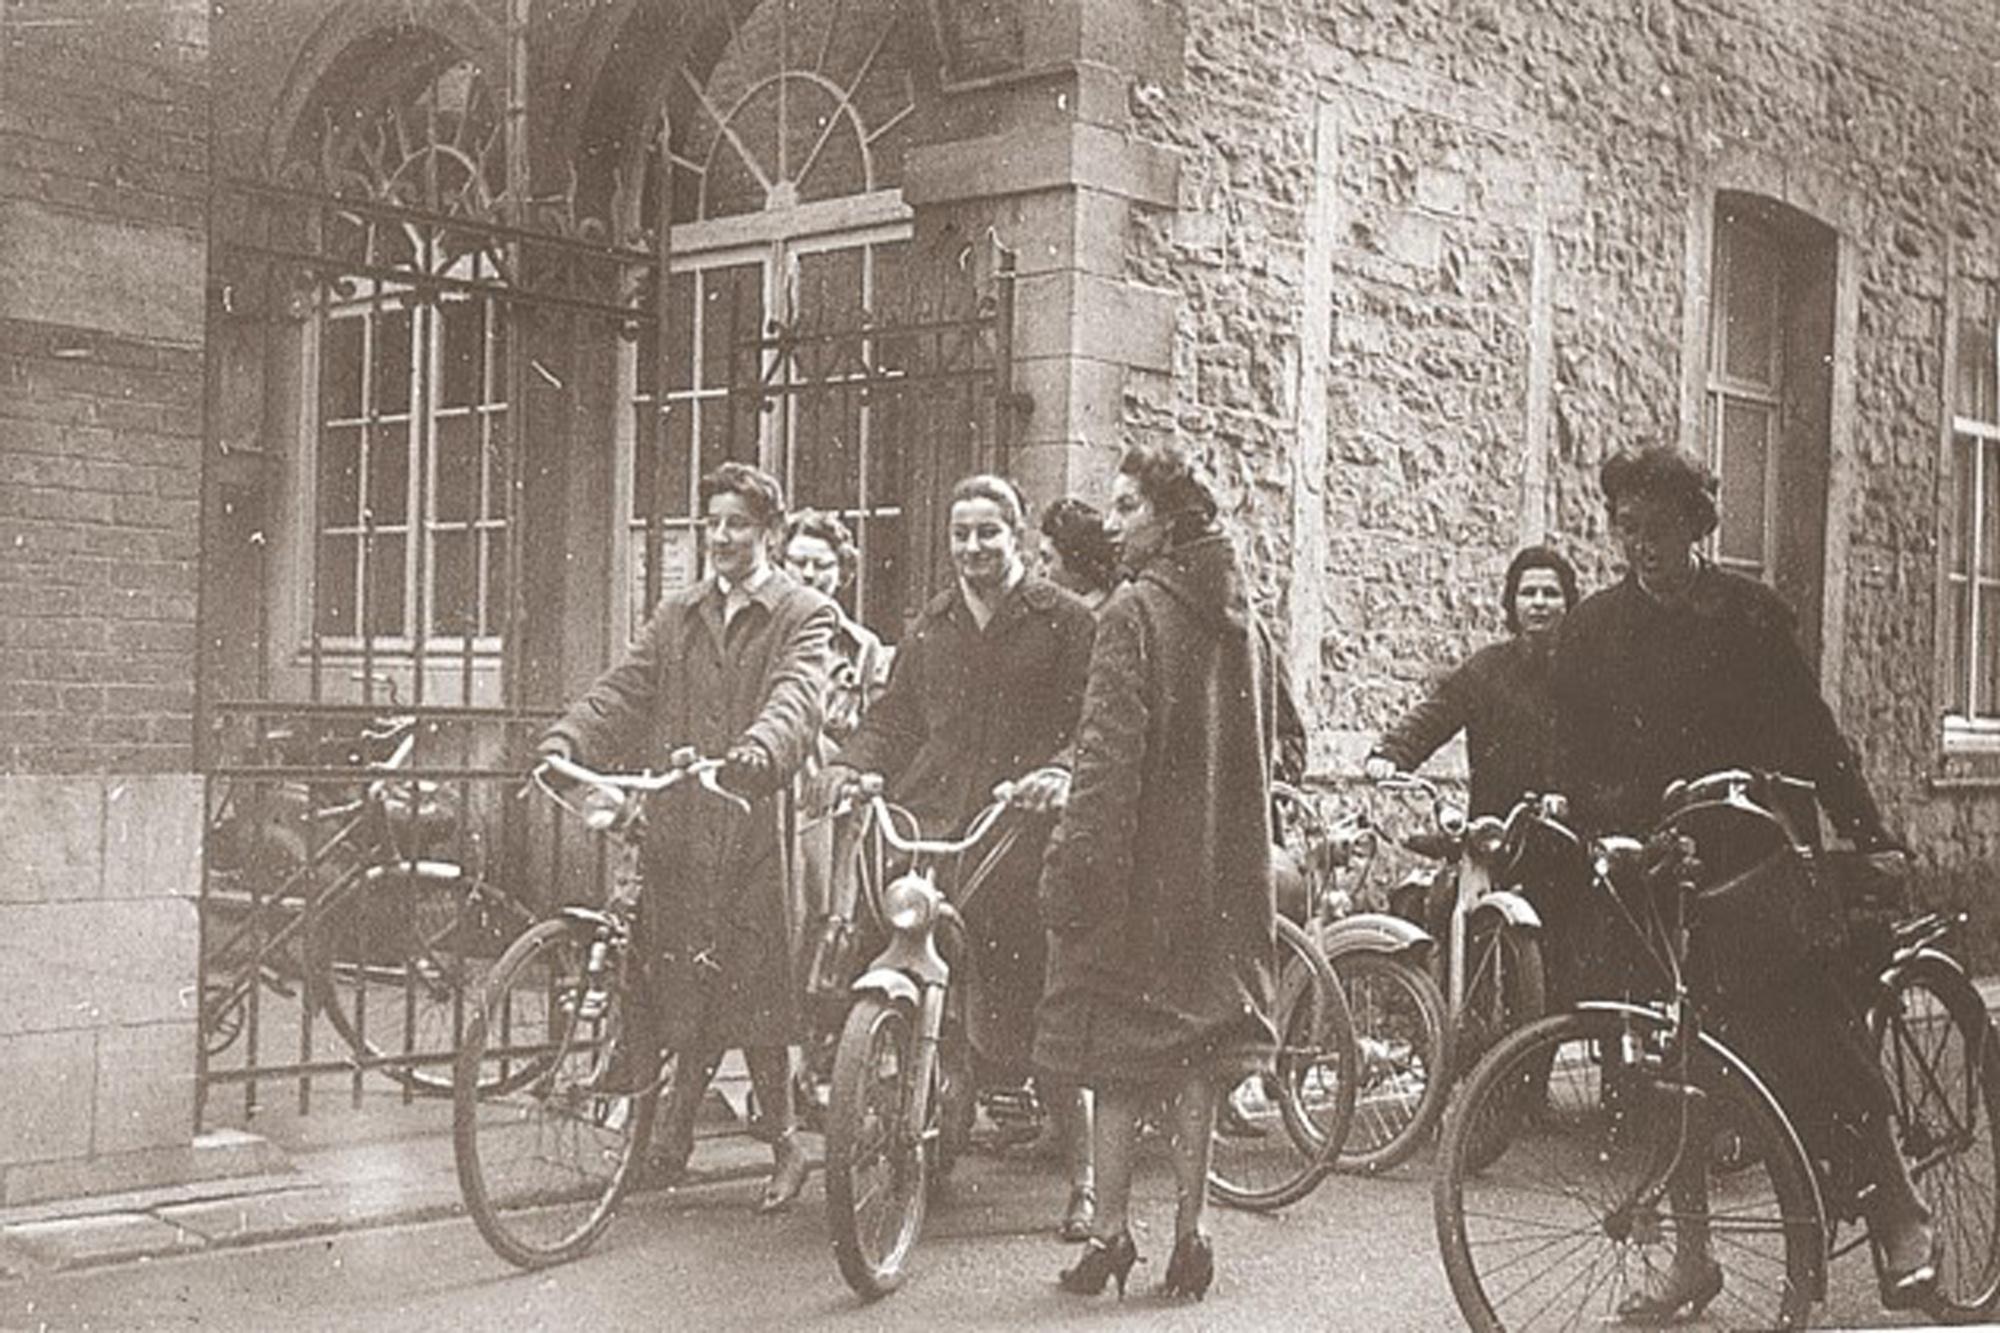 In de jaren 40 werden de thuisverpleegkundigen van het Wit-Gele Kruis in de volksmond 'vliegmachientjes' genoemd - omdat ze zo vlug van de ene naar de andere patiënt koersten met hun fiets.